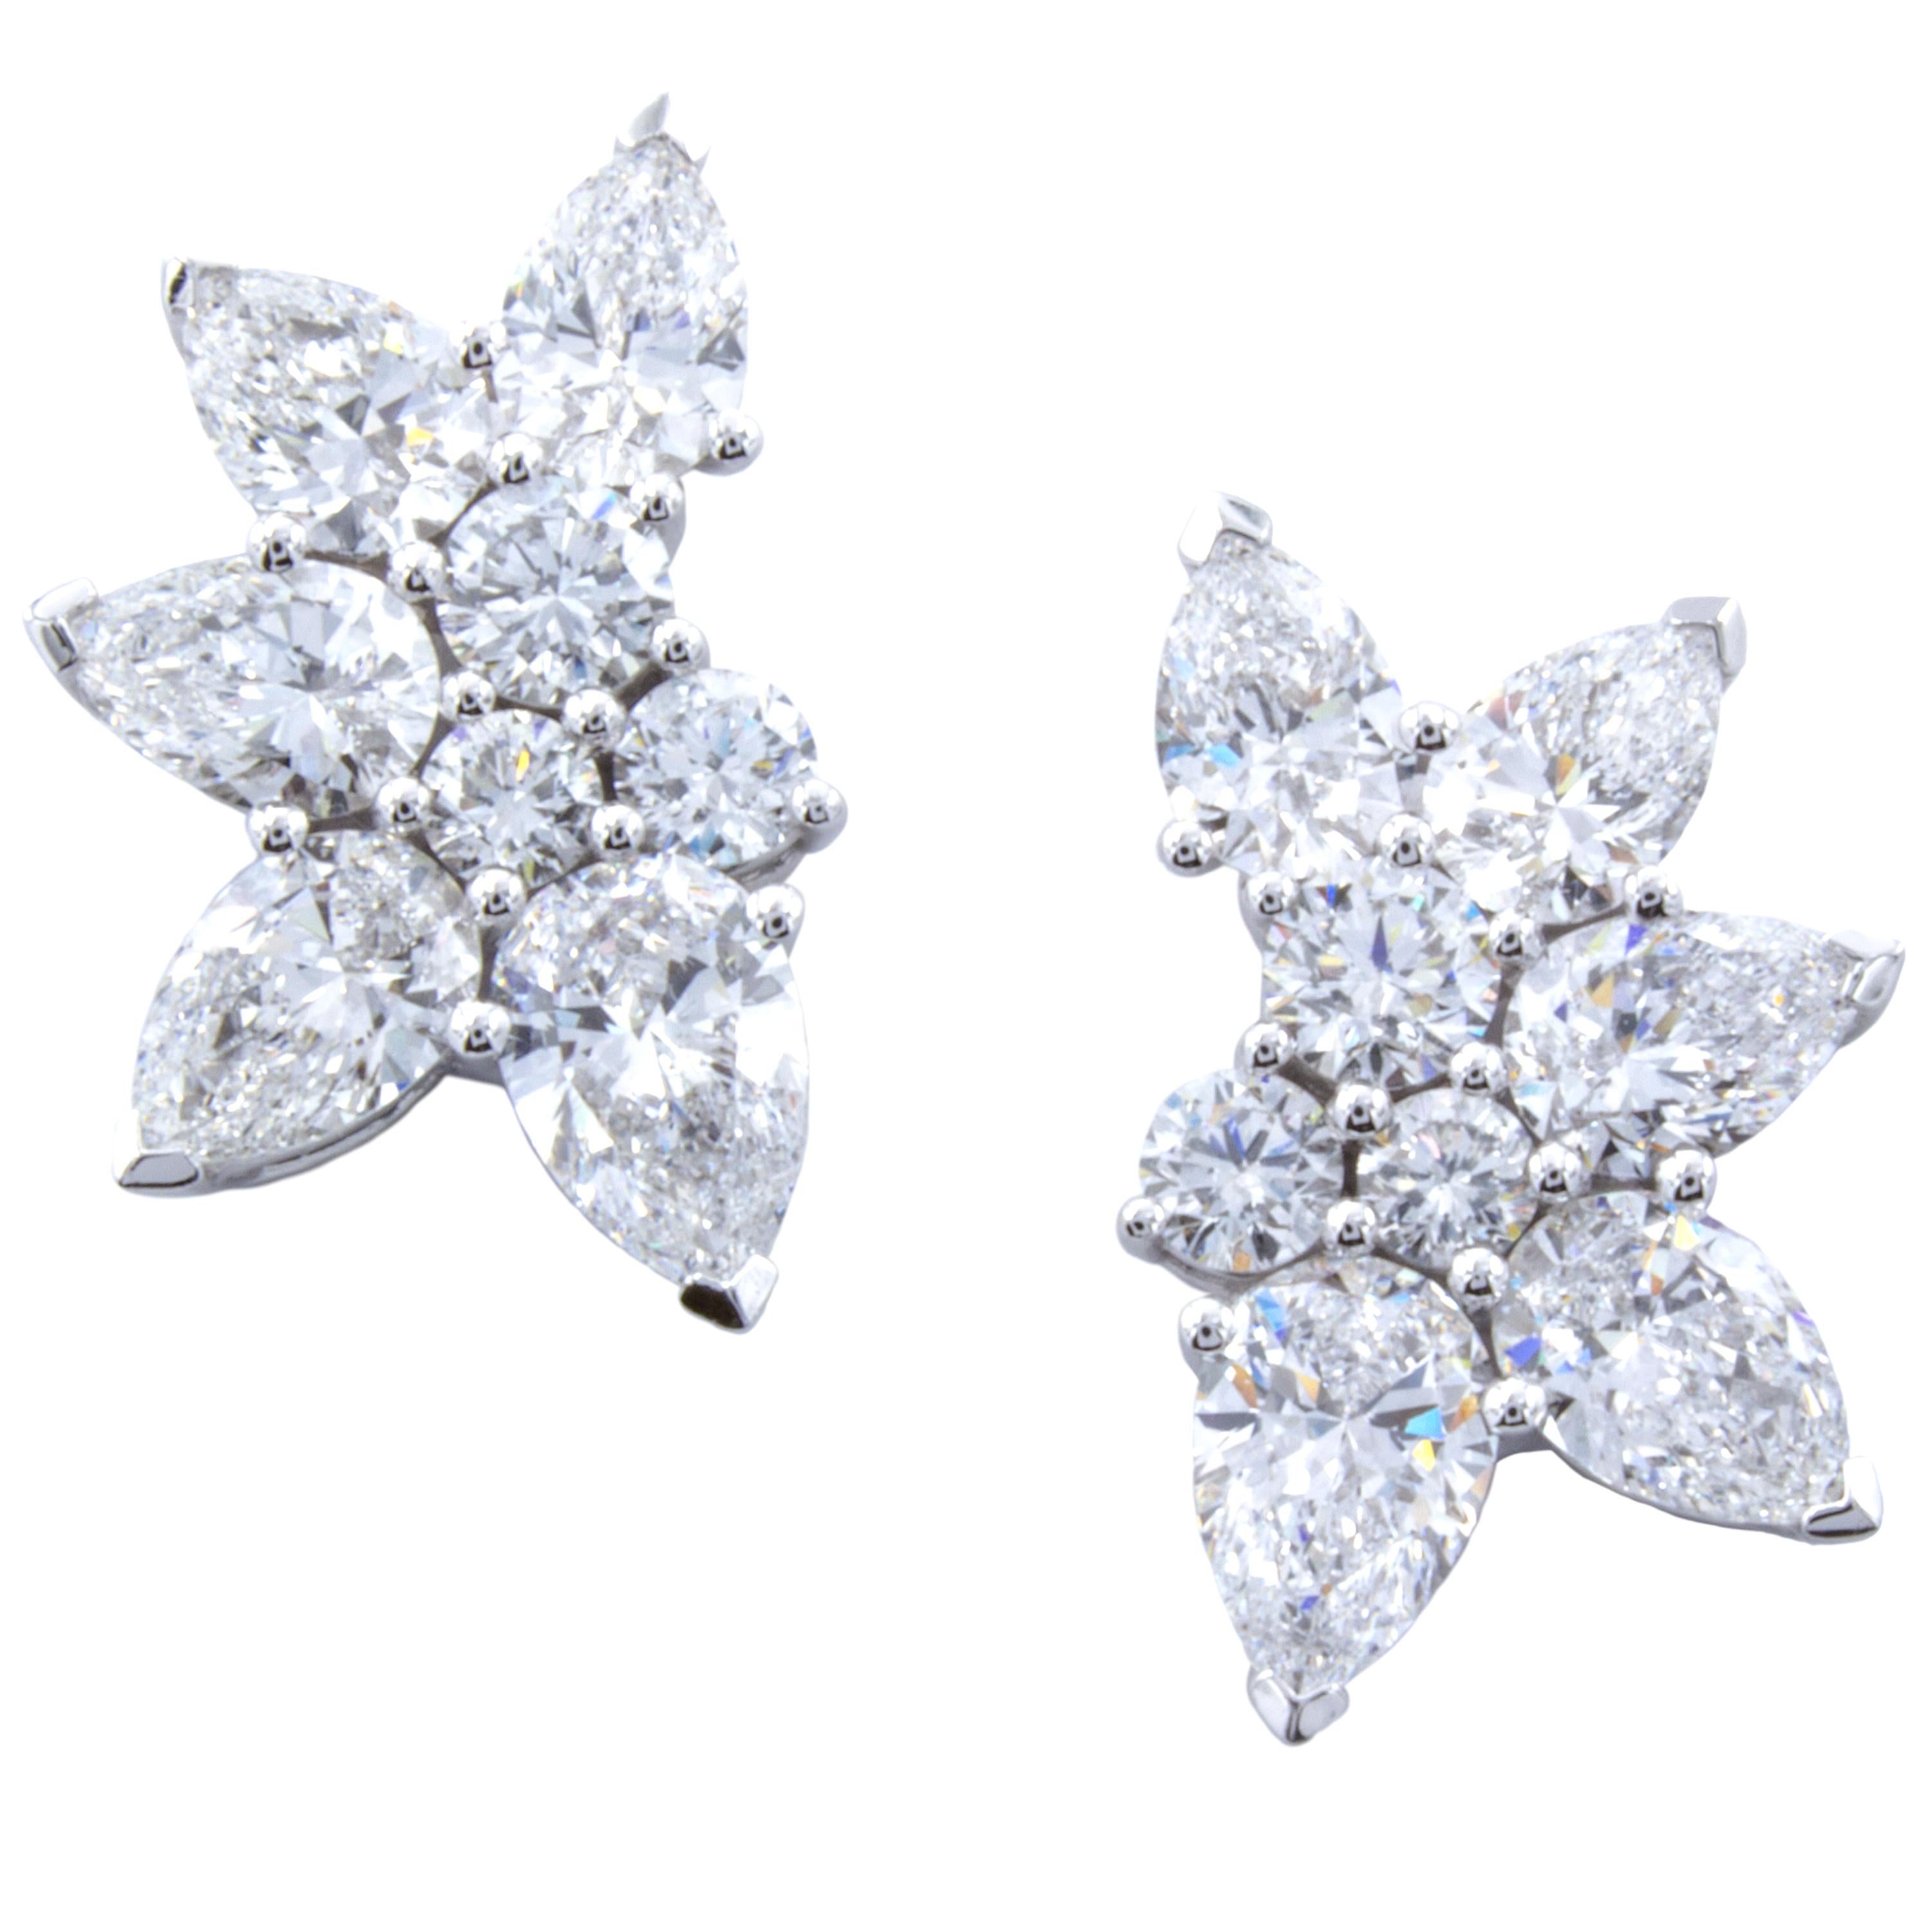 David Rosenberg 2.85 Round  Pear Shape 18K White Gold Diamond Cluster Earring